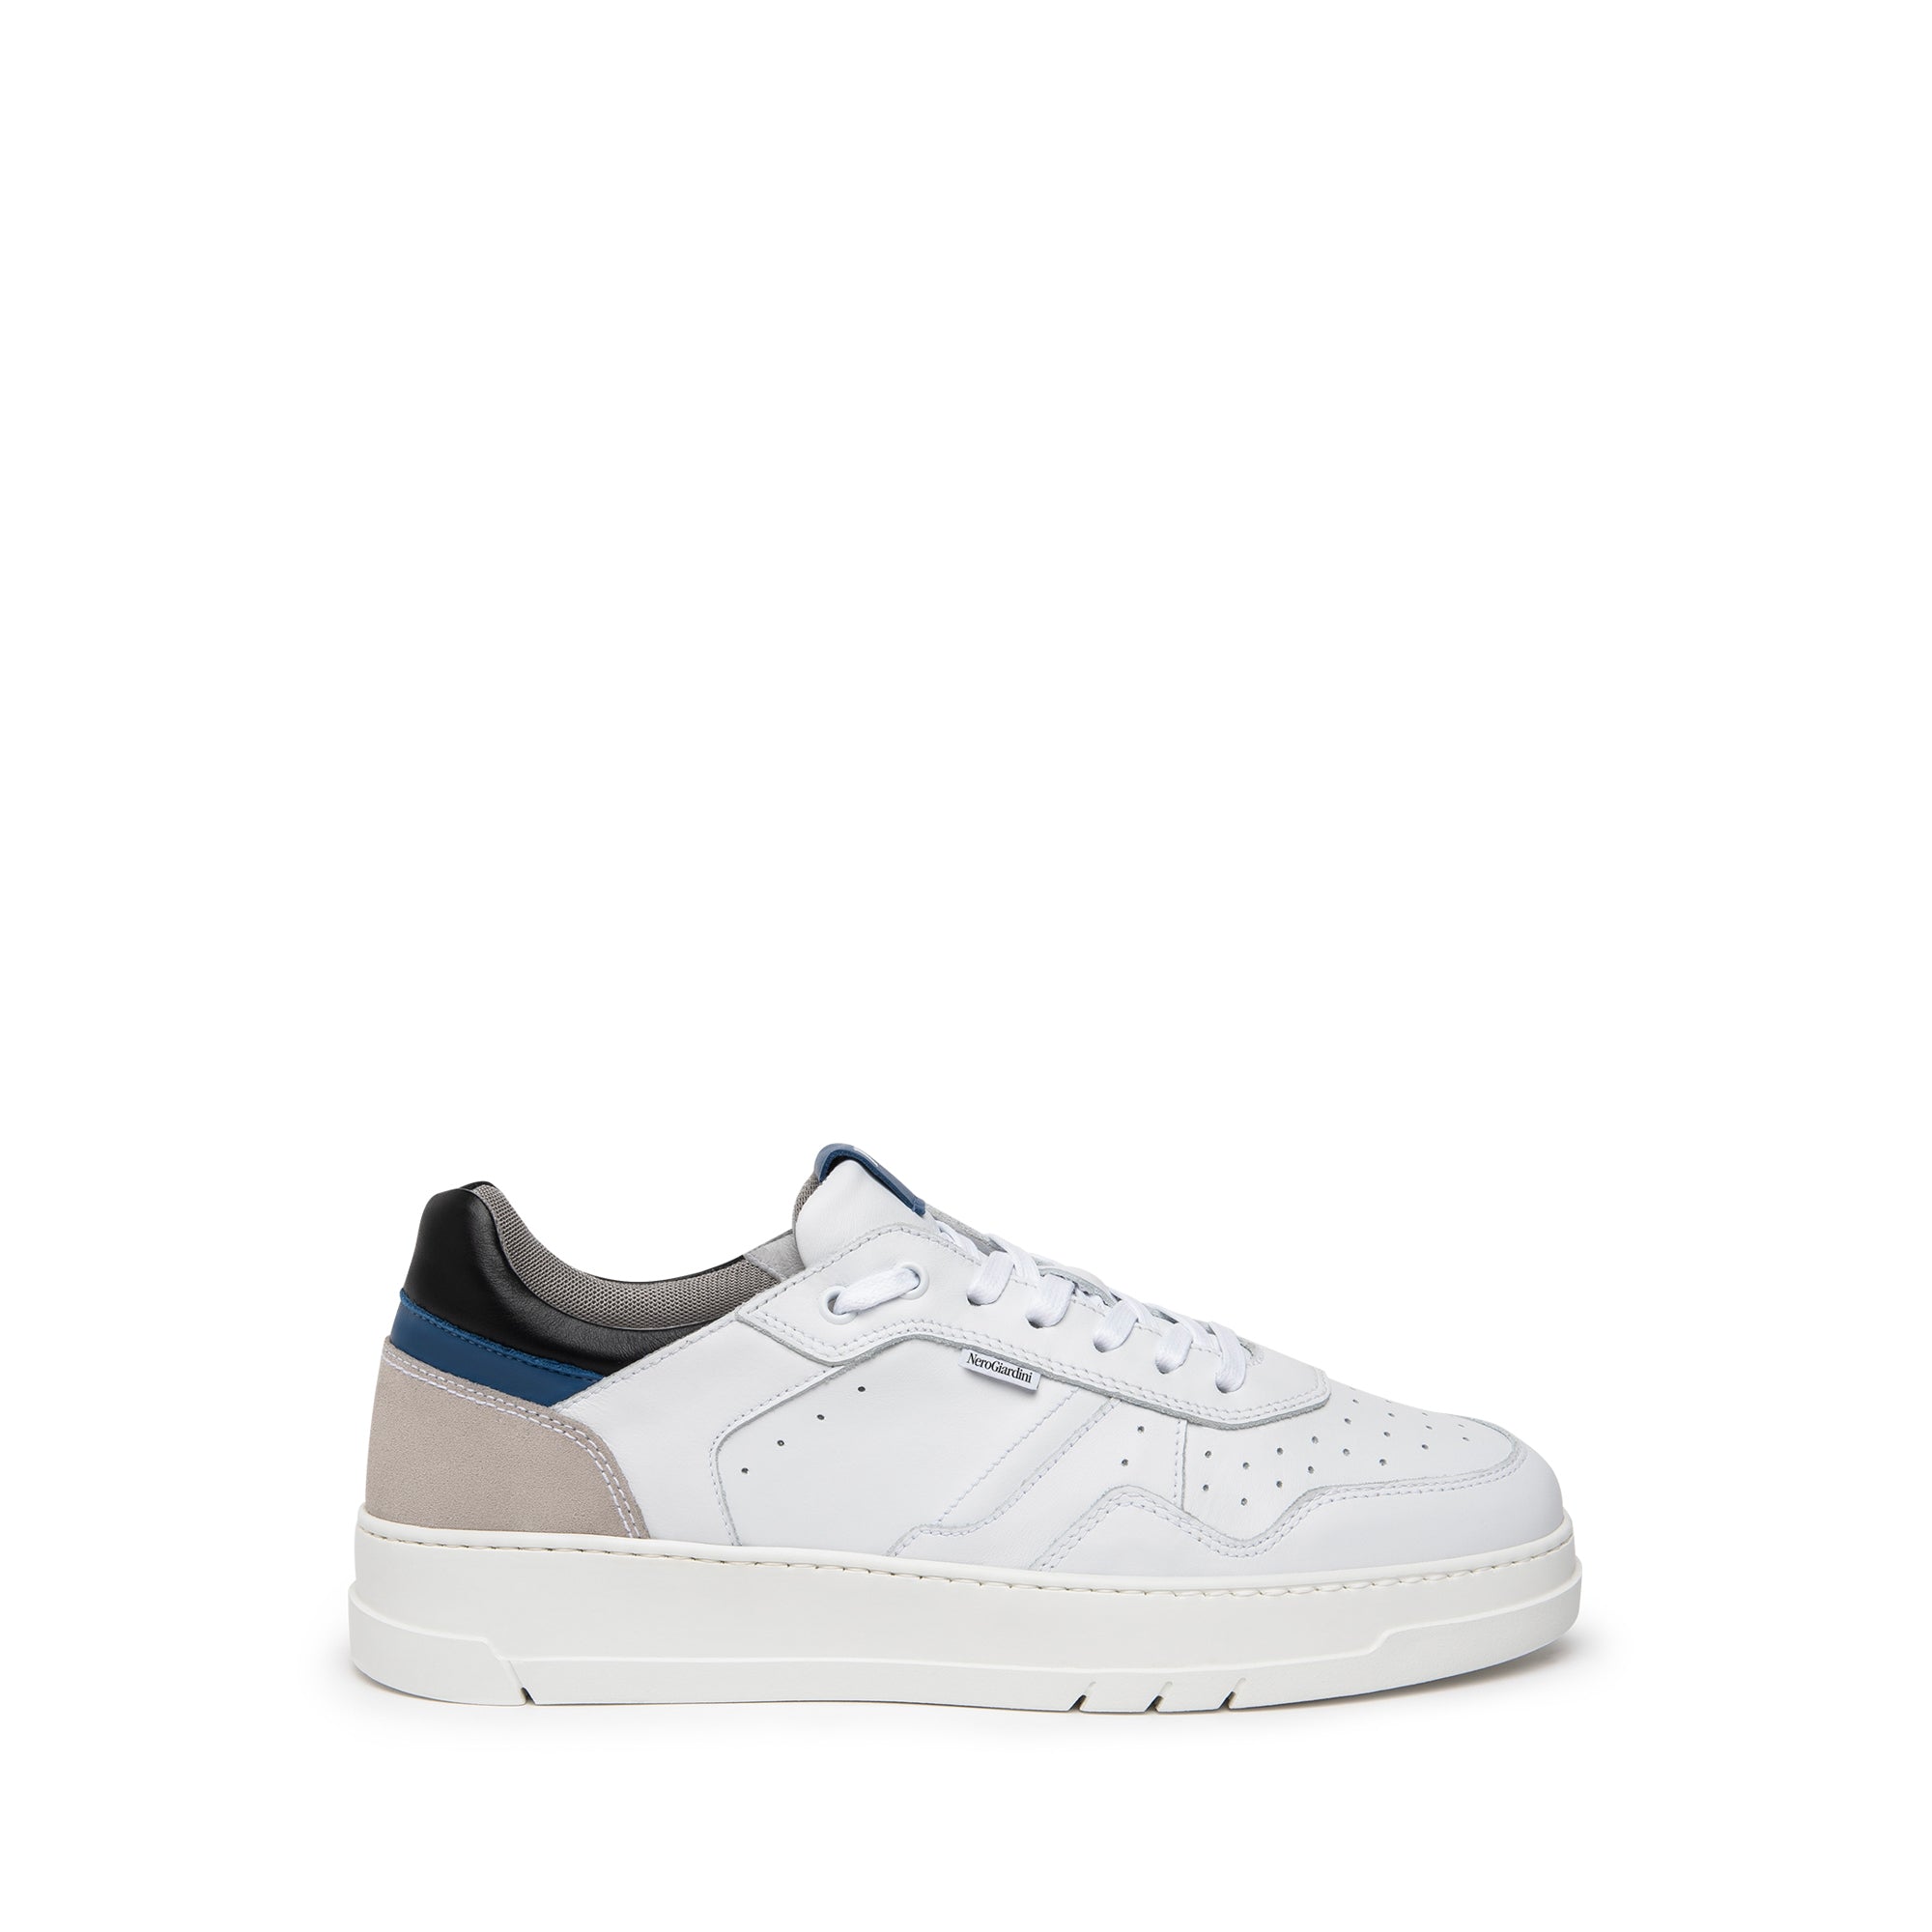 NERO GIARDINI Sneakers Uomo - Bianco modello E302870U